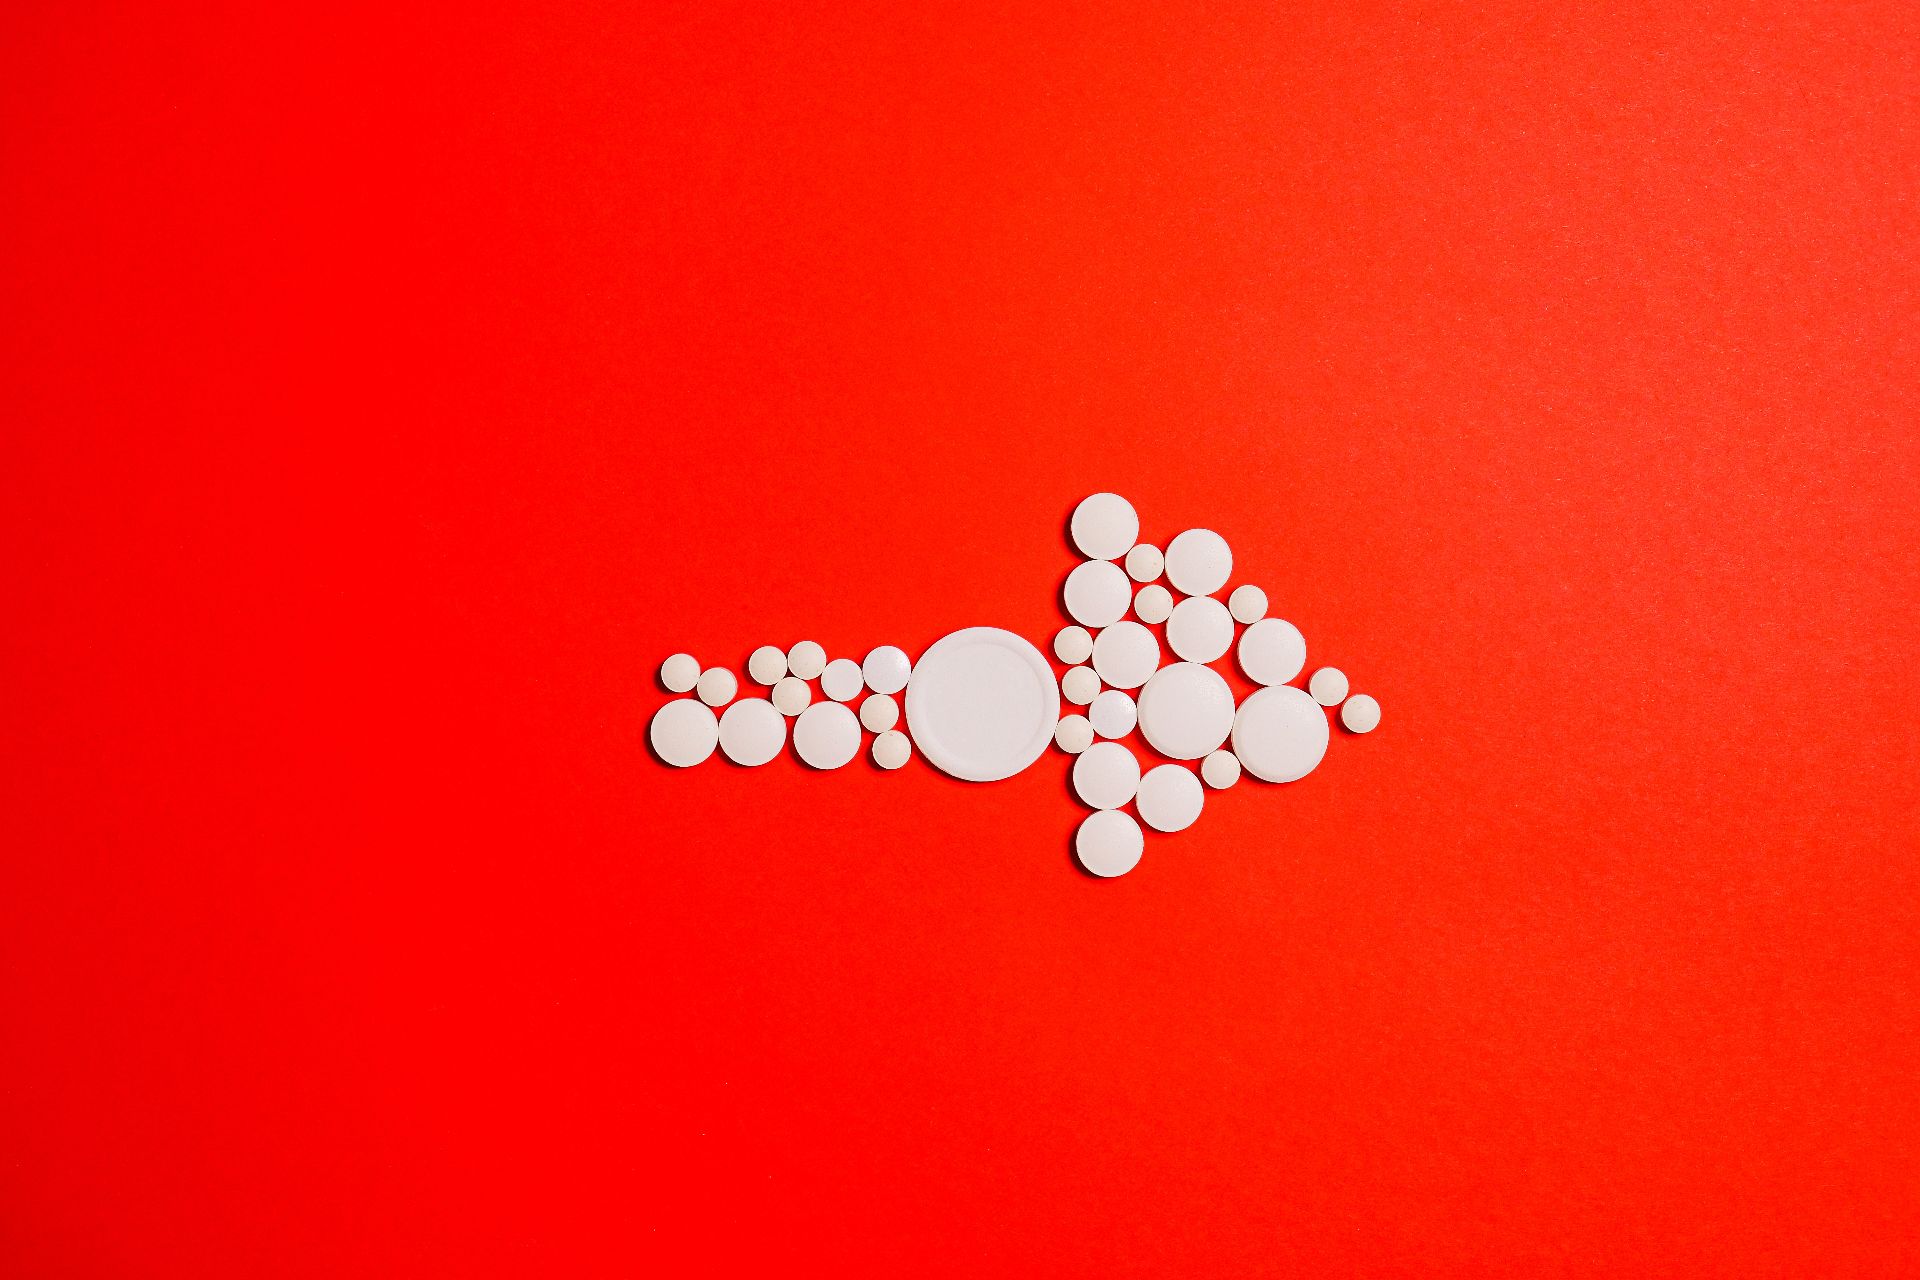 Combinația codeină-ibuprofen cauzează reacții grave, inclusiv hipokaliemie severă